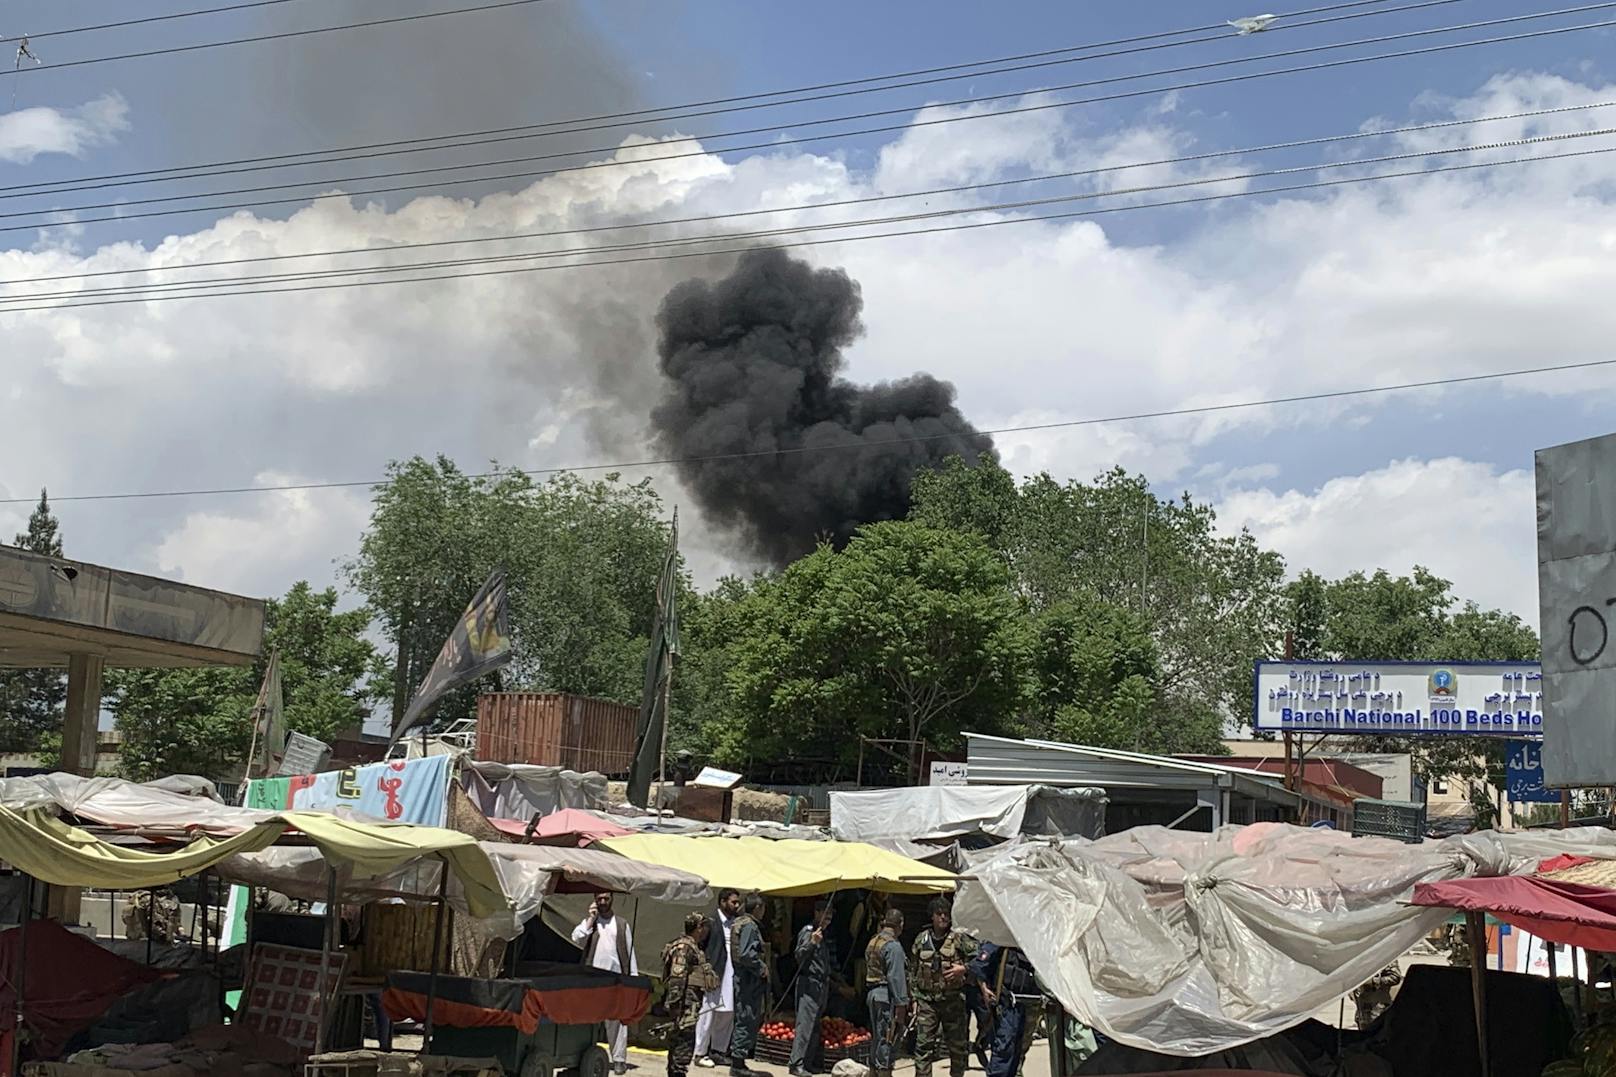 Bewaffnete Attentäter haben am 12. Mai die Entbindungsstation des Dasht-e-Barchi Krankenhauses in Kabul gestürmt und mindestens 14 Menschen getötet. Erst nach stundenlangen Feuergefechten konnten die Angreifer von Spezialeinheiten der Polizei neutralisiert werden.